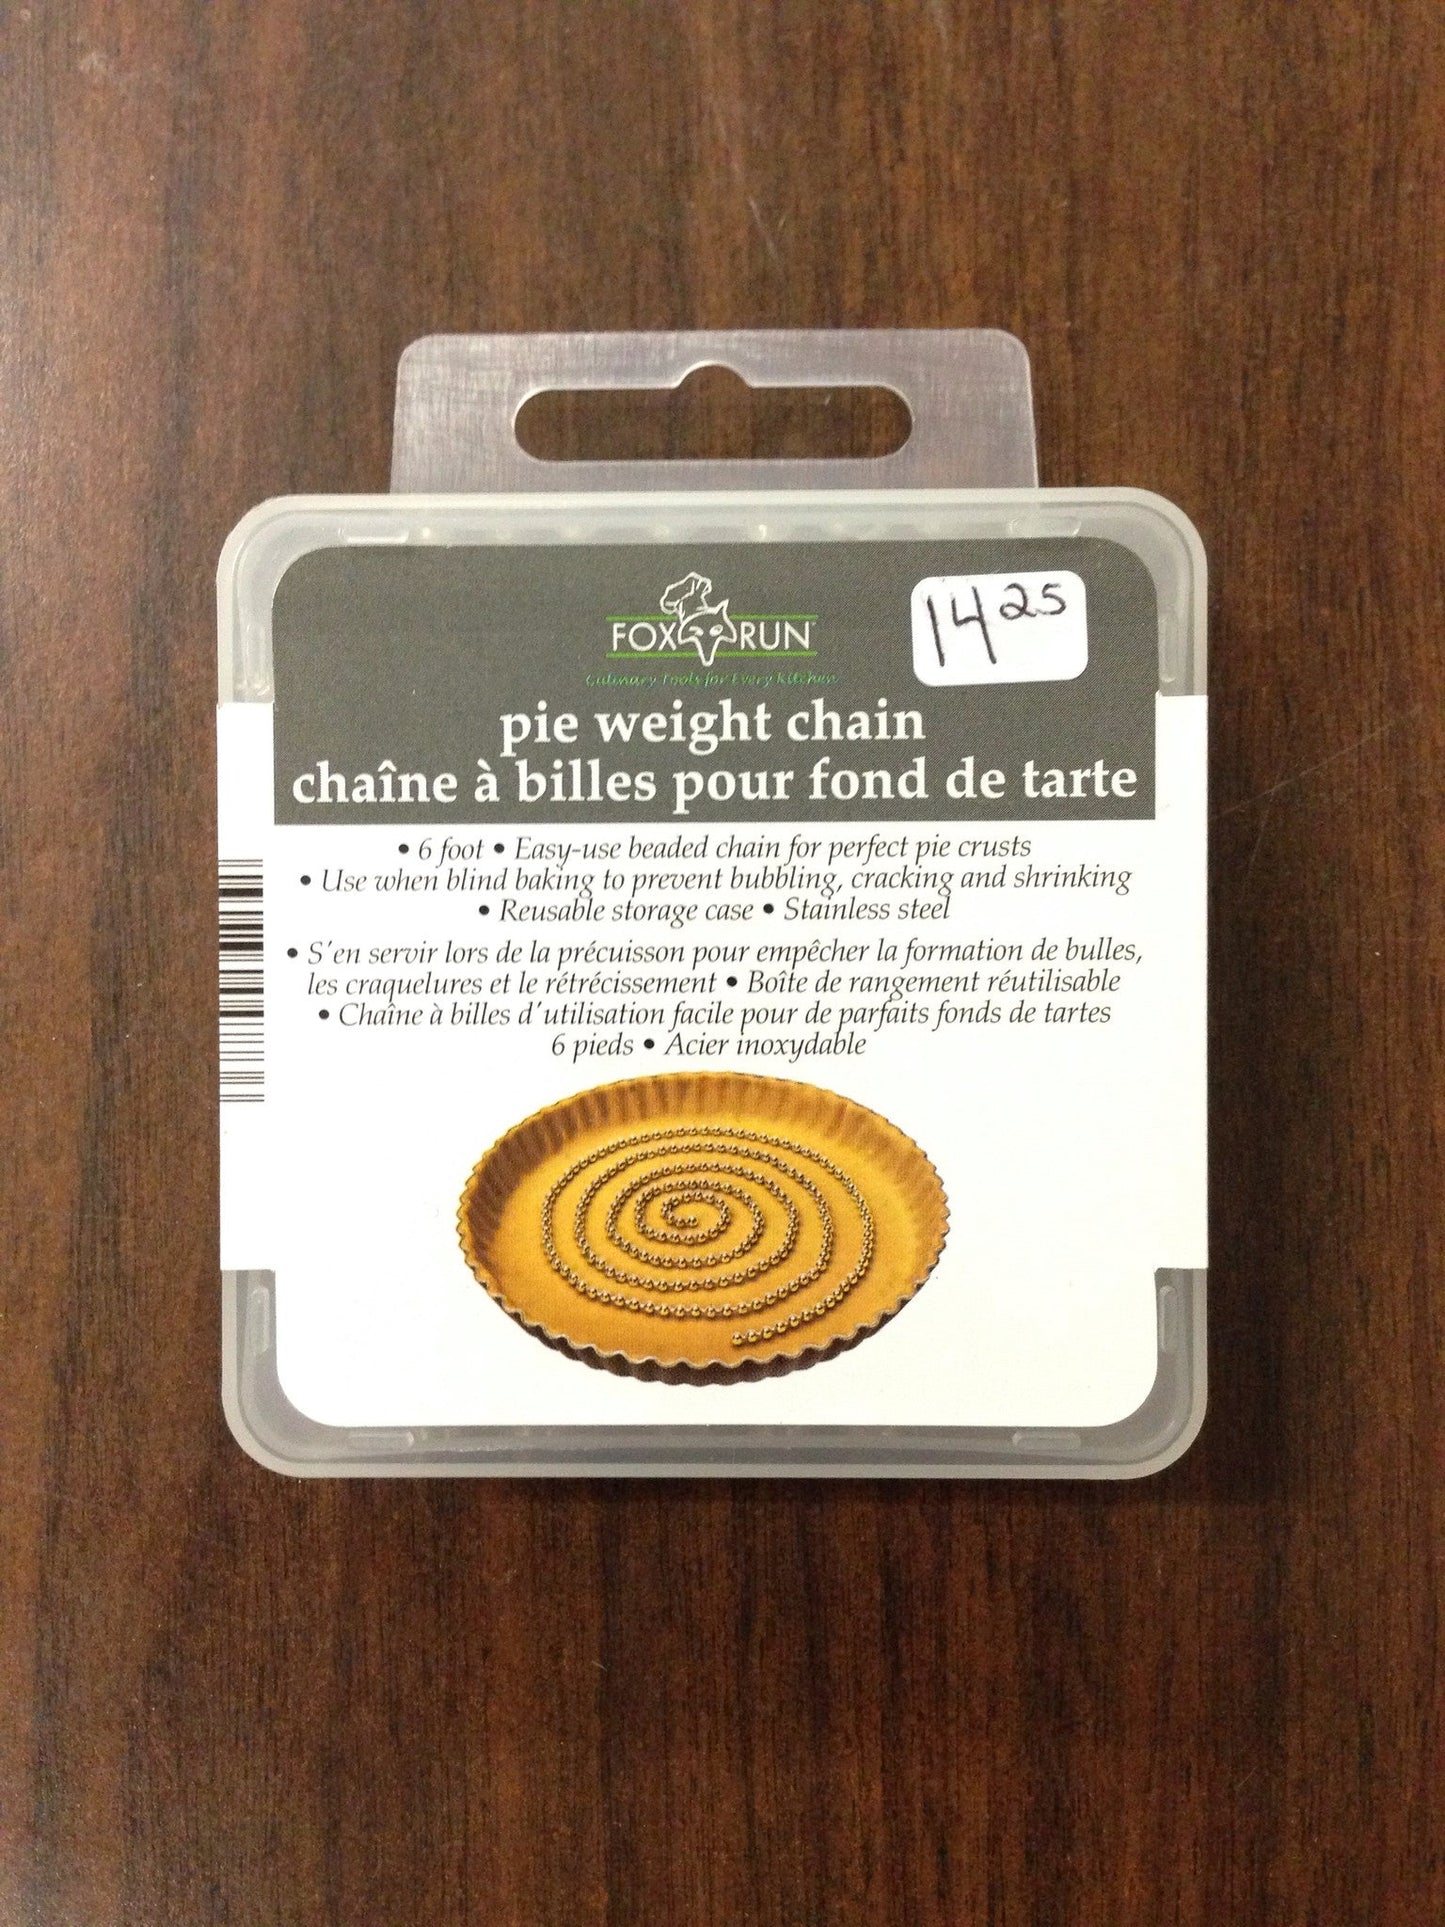 Pie weight chain